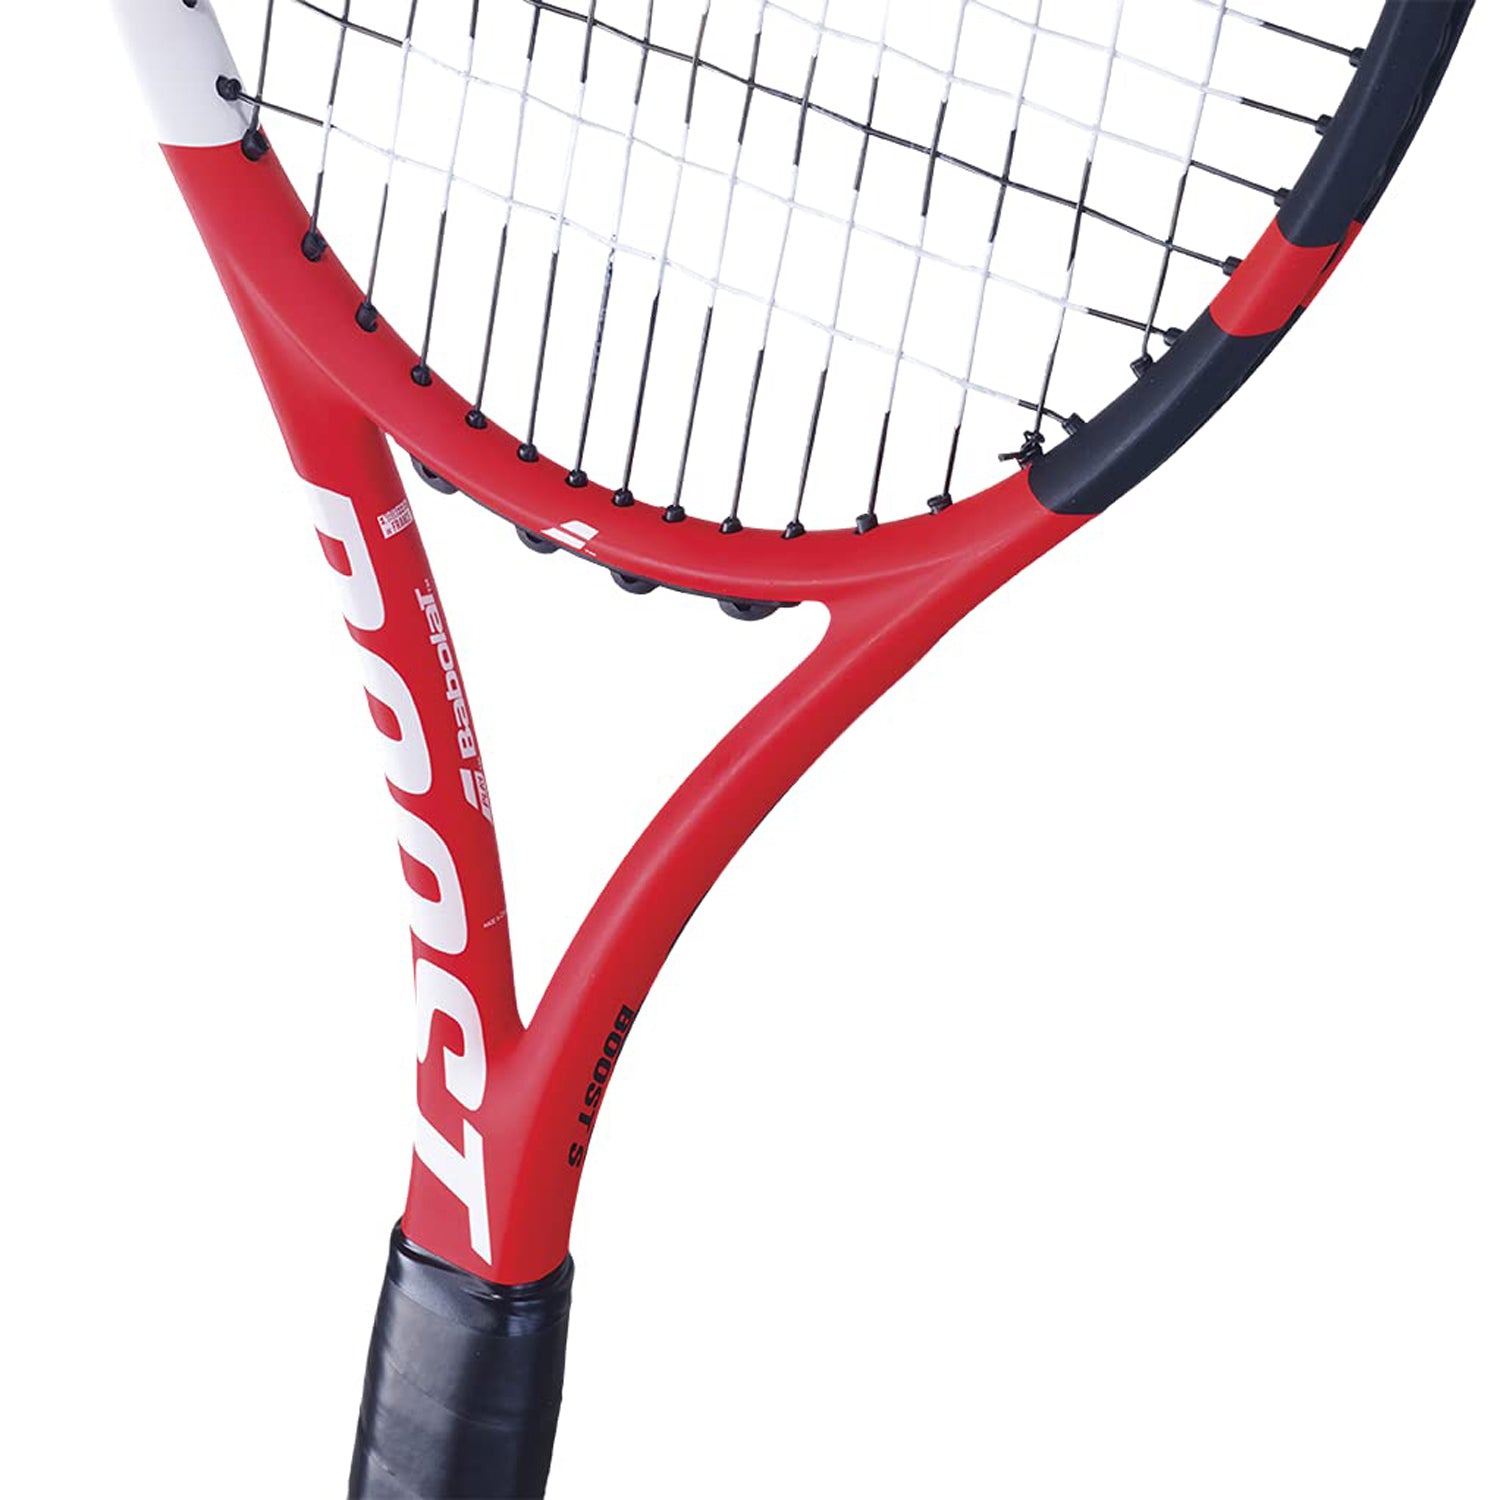 Babolat Boost S Tennis Racquet - Best Price online Prokicksports.com